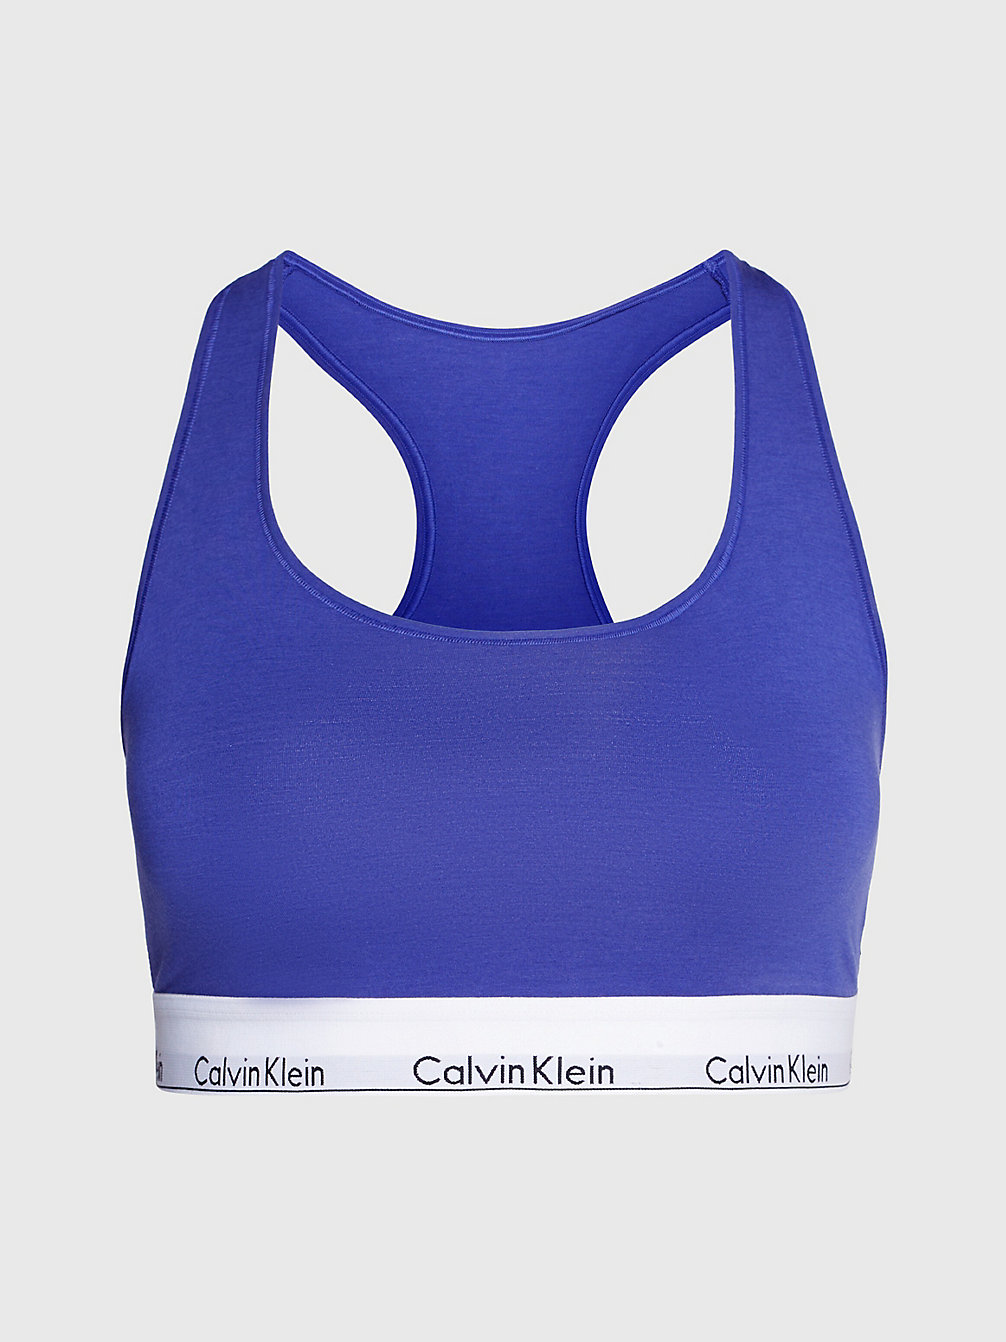 Brassière Plus Size - Modern Cotton > SPECTRUM BLUE > undefined donna > Calvin Klein